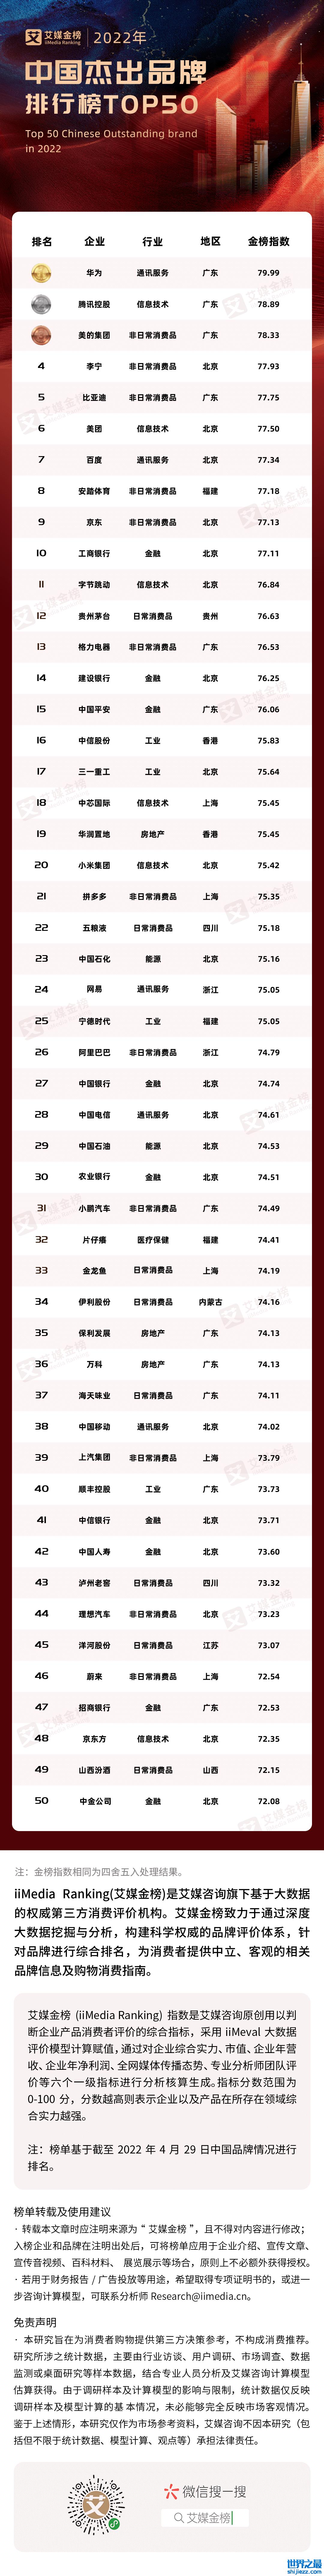 2022年中国杰出品牌排行榜TOP50 